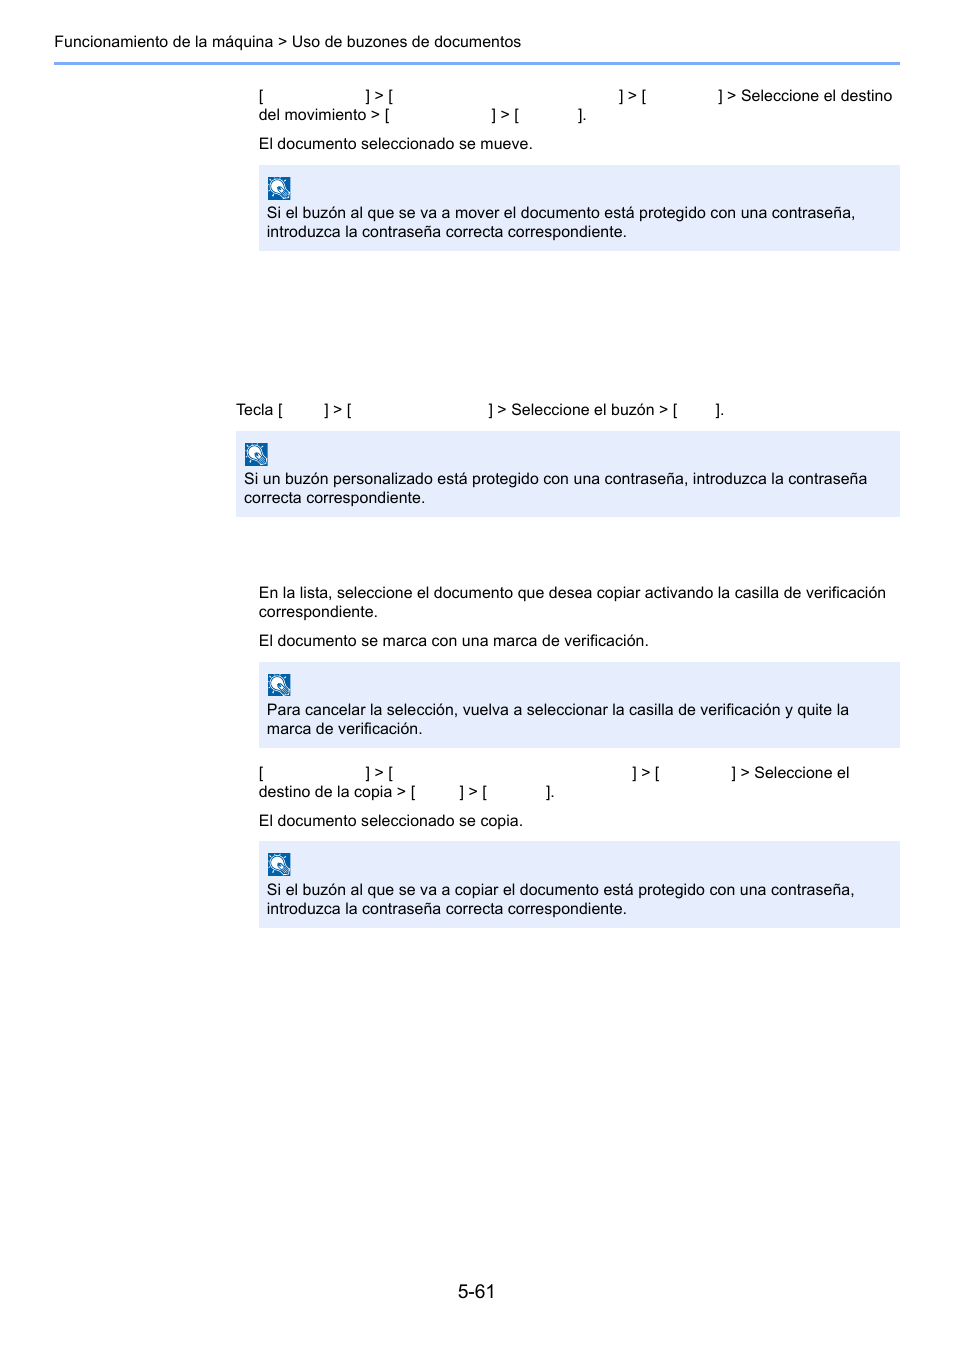 Copia de documentos de un buzón, Personalizado a otros buzones -61 | Kyocera Taskalfa 3511i Manual del usuario | Página 253 / 623